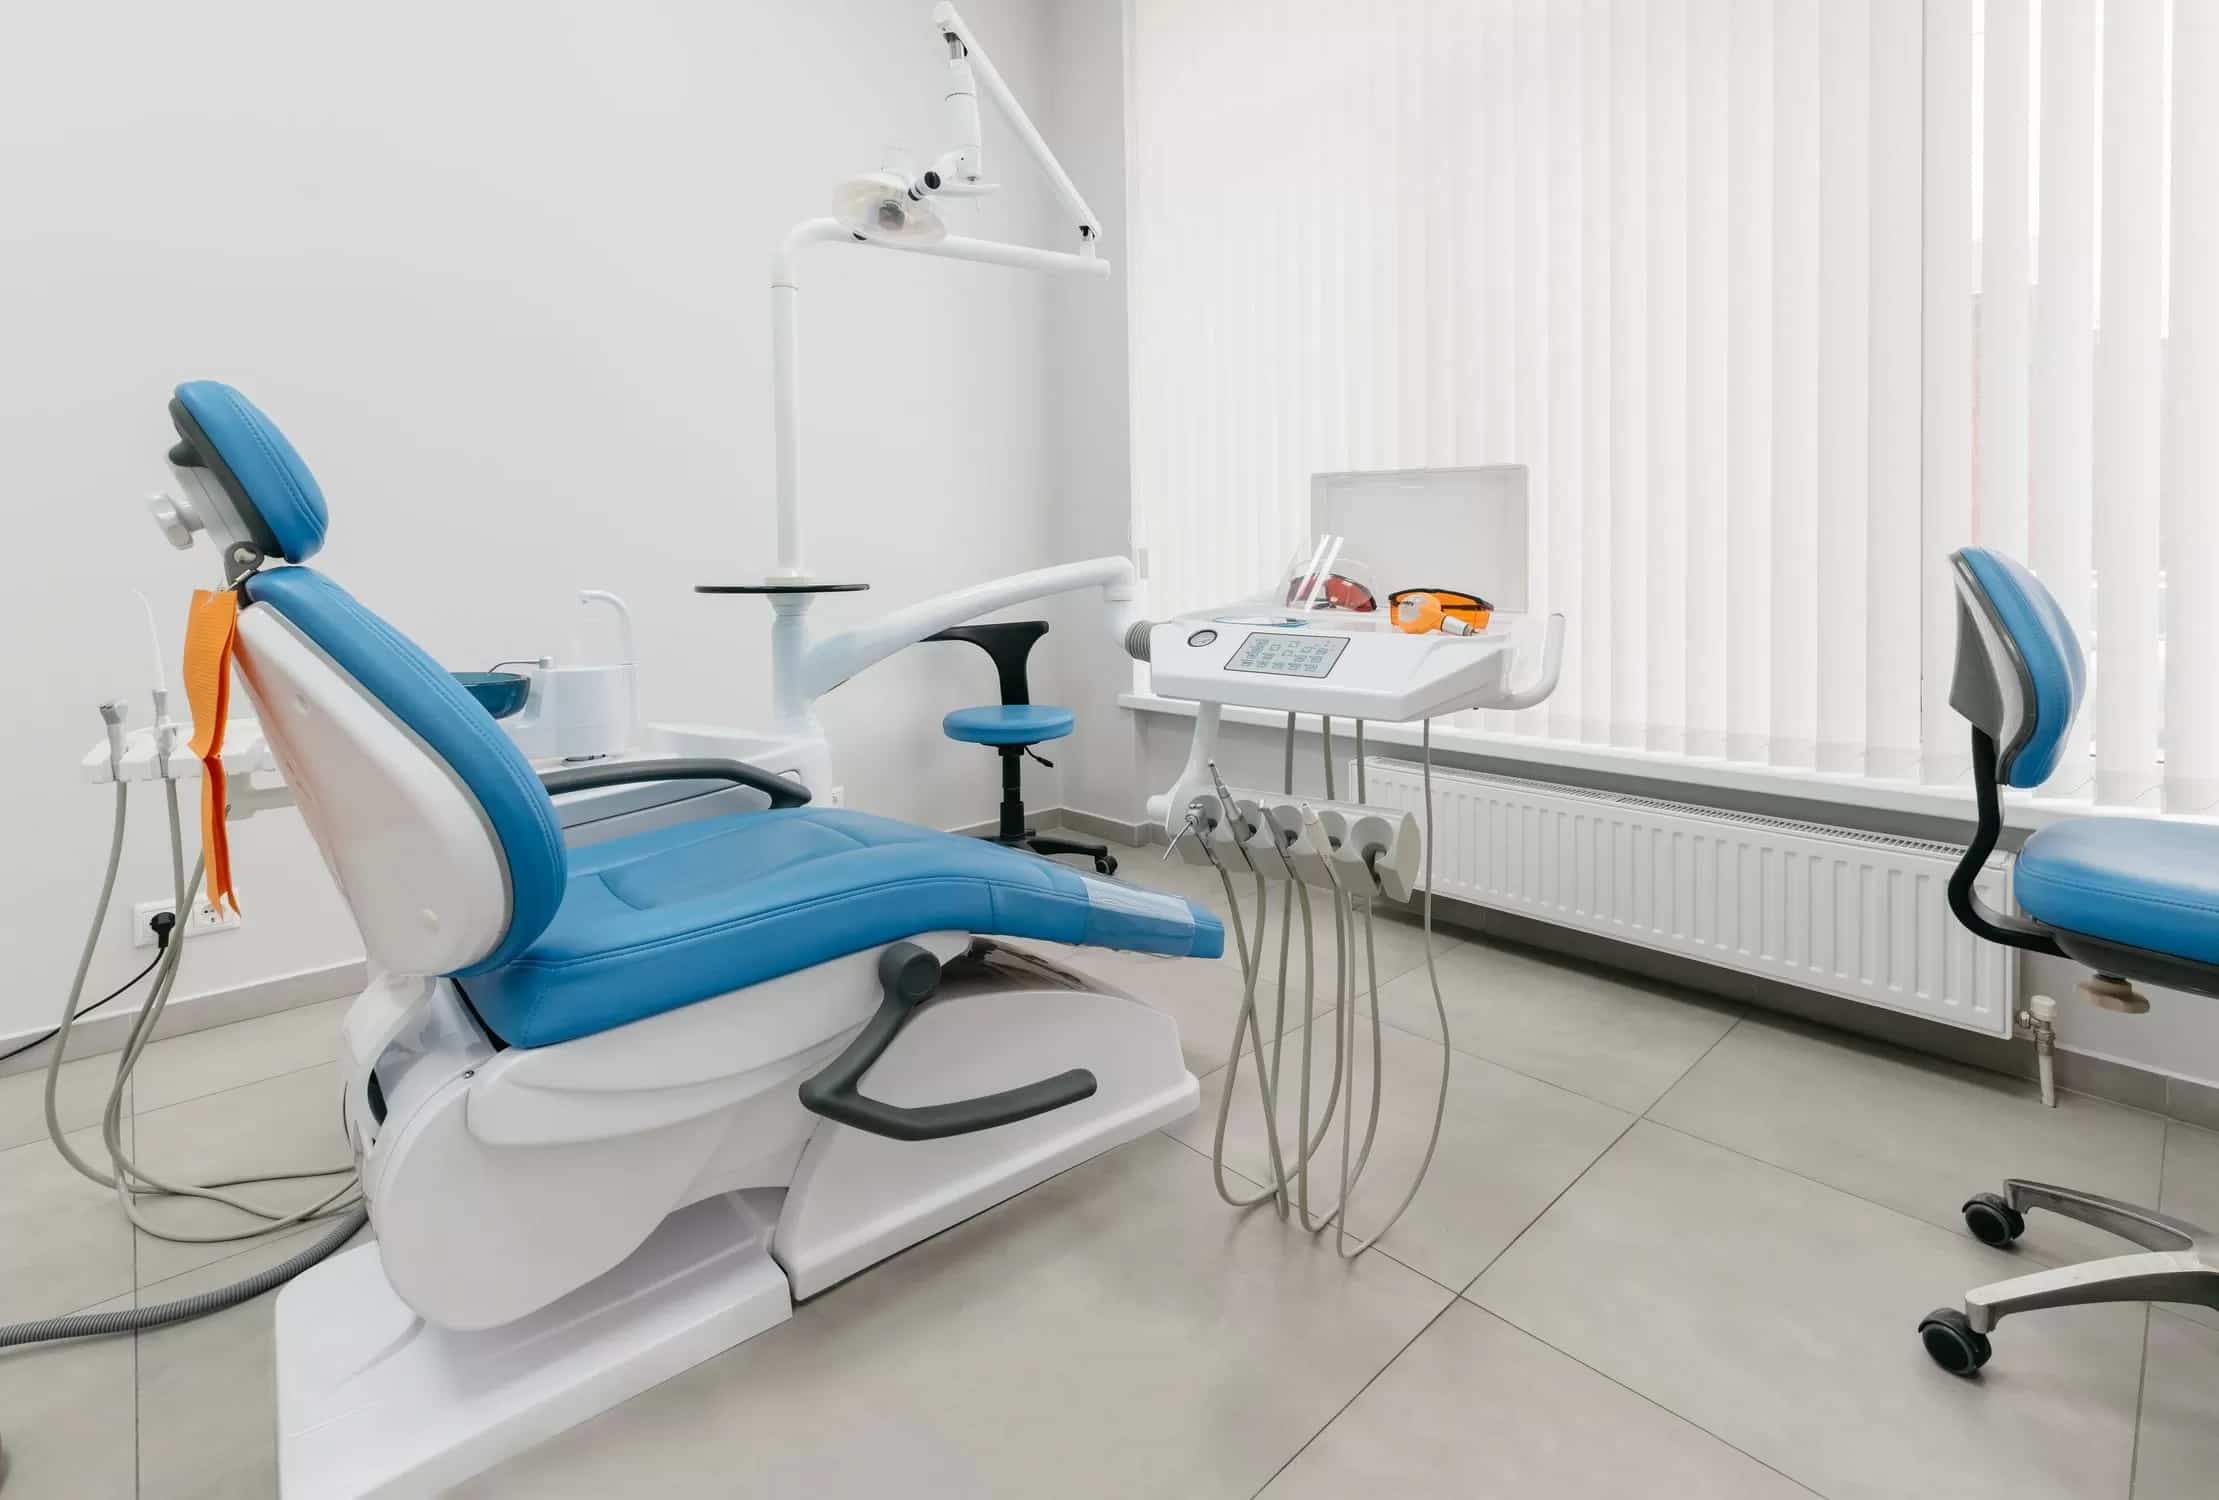 سرير طبيب الاسنان؛ البلاستيك المضغوط يتحمل وزن ثقيل مقاوم للصدمات